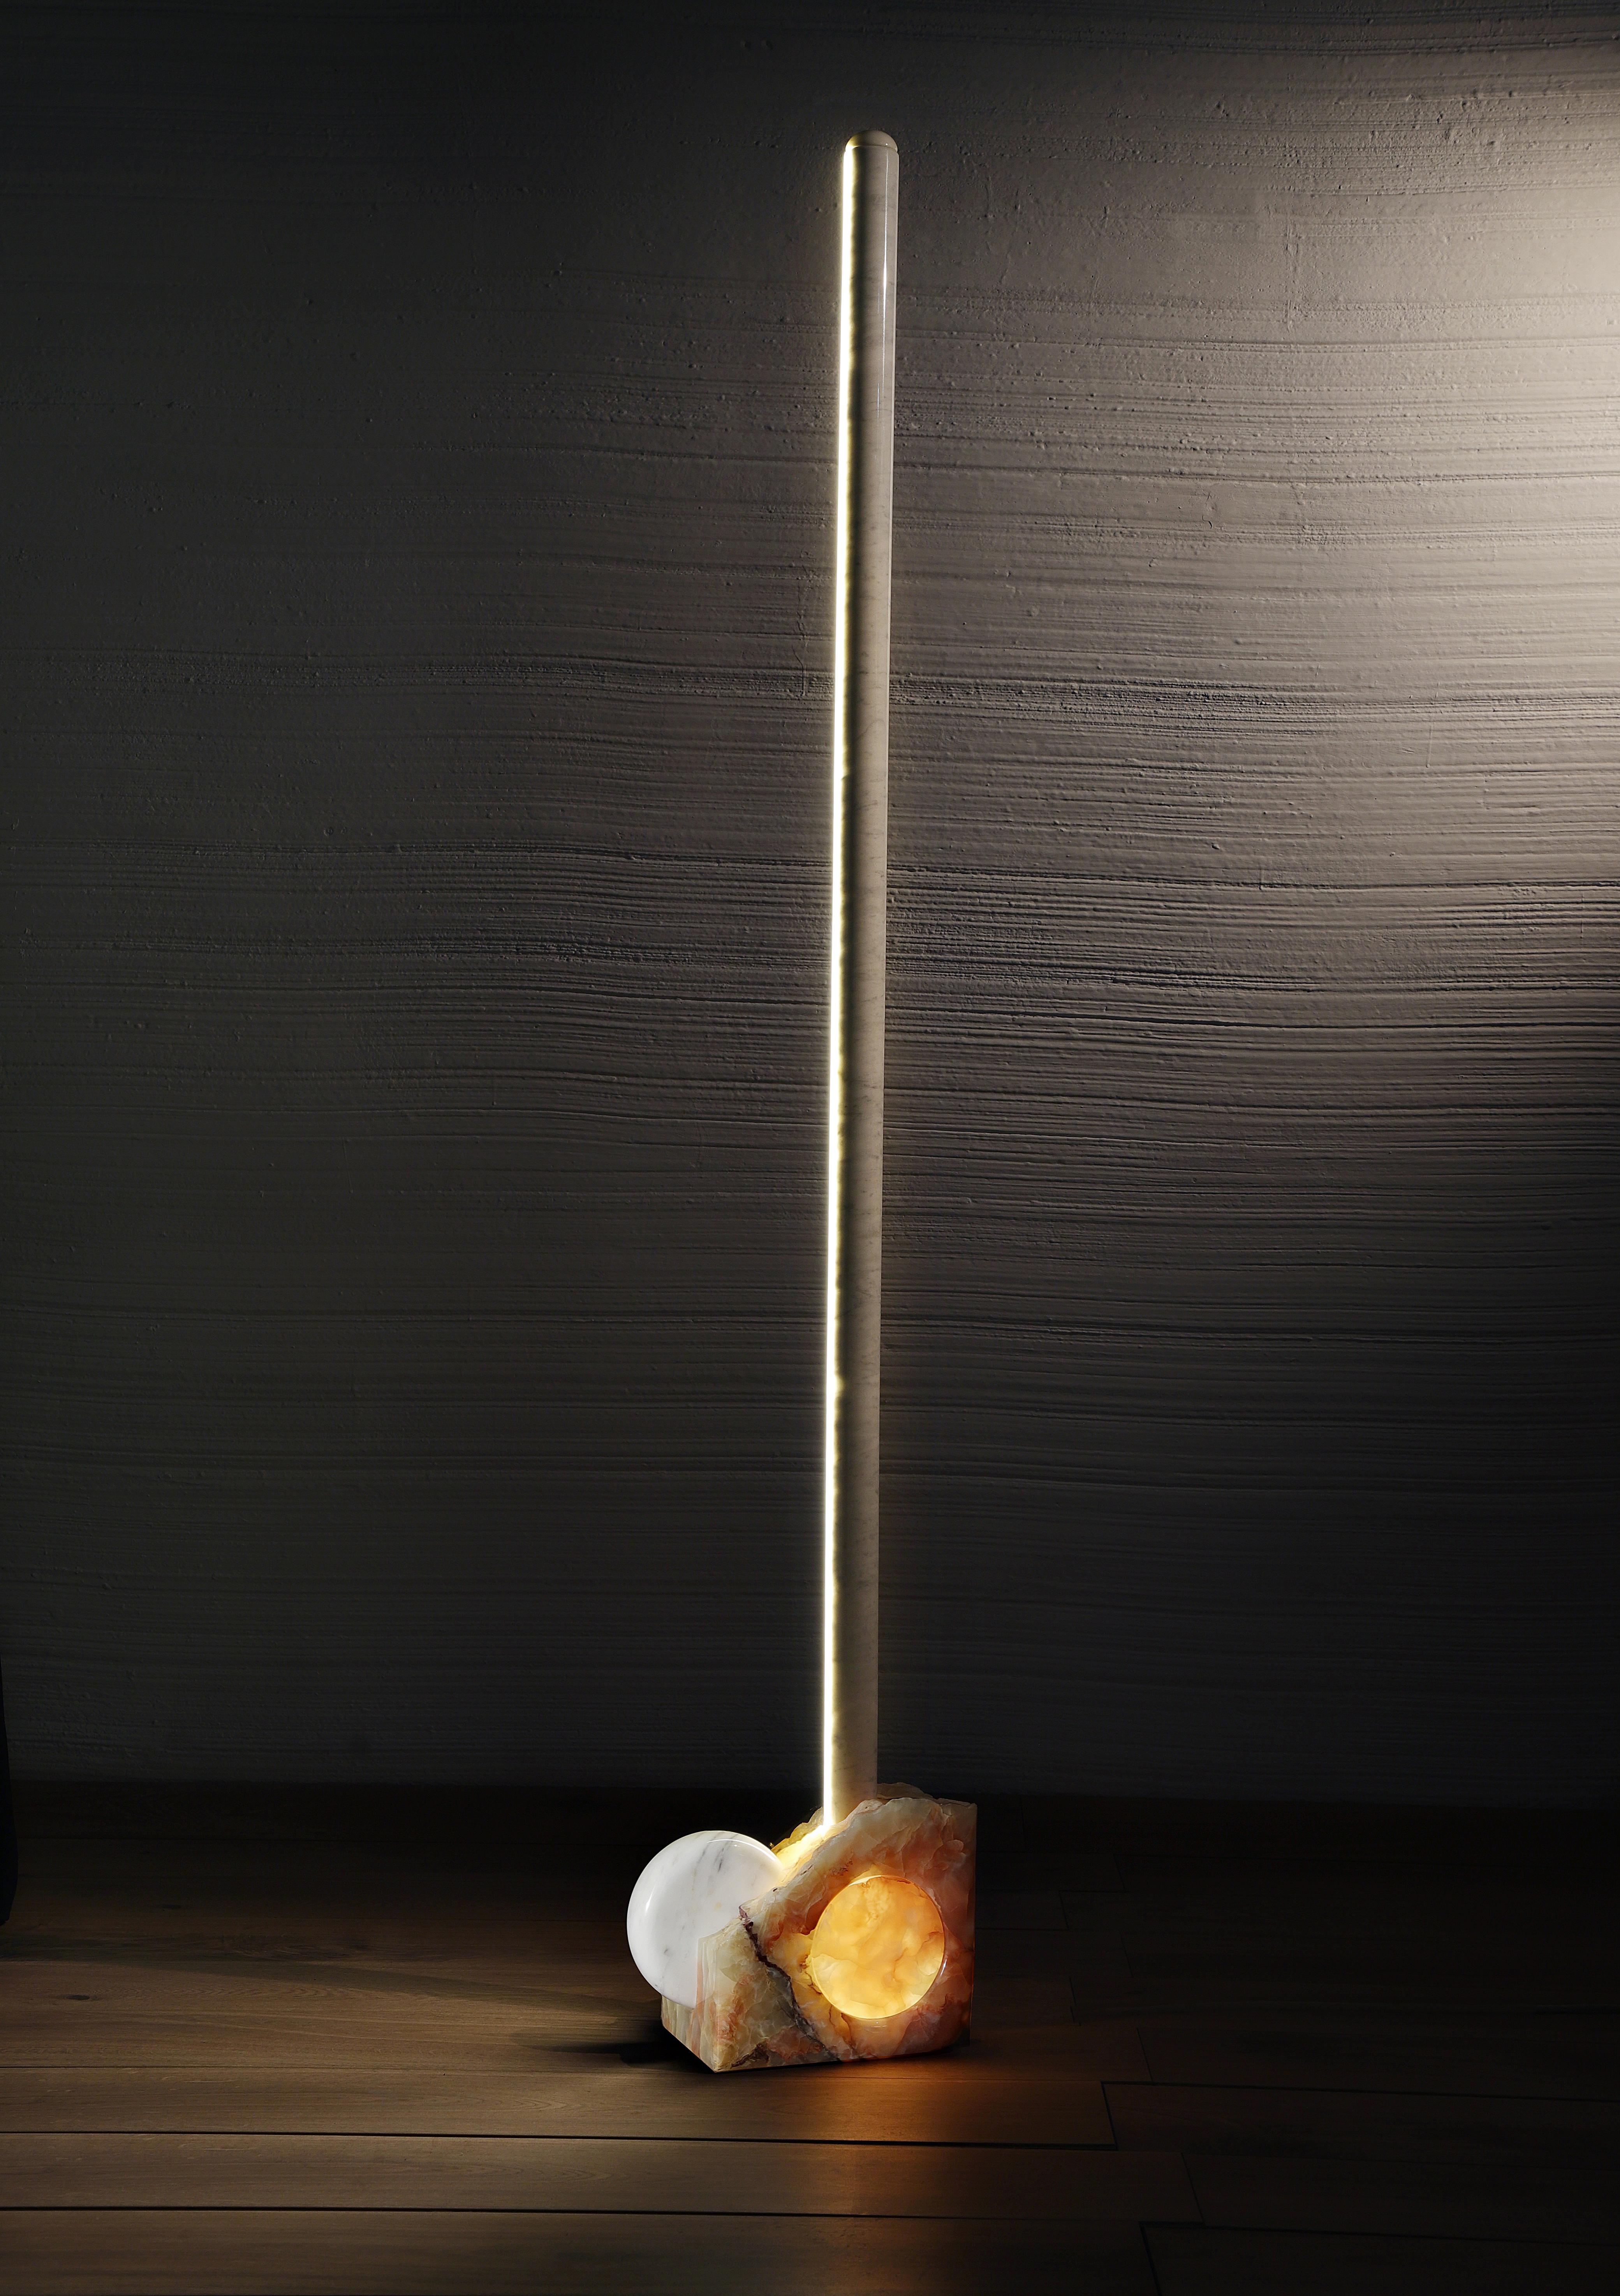 La lampe en terre Capolino stupéfie par la sensation de légèreté qu'elle procure, même si elle a été réalisée avec des matériaux coûteux et très précieux. Une statue lumineuse en marbre bianco Carrara filée sur une base en onice multicolore avec une